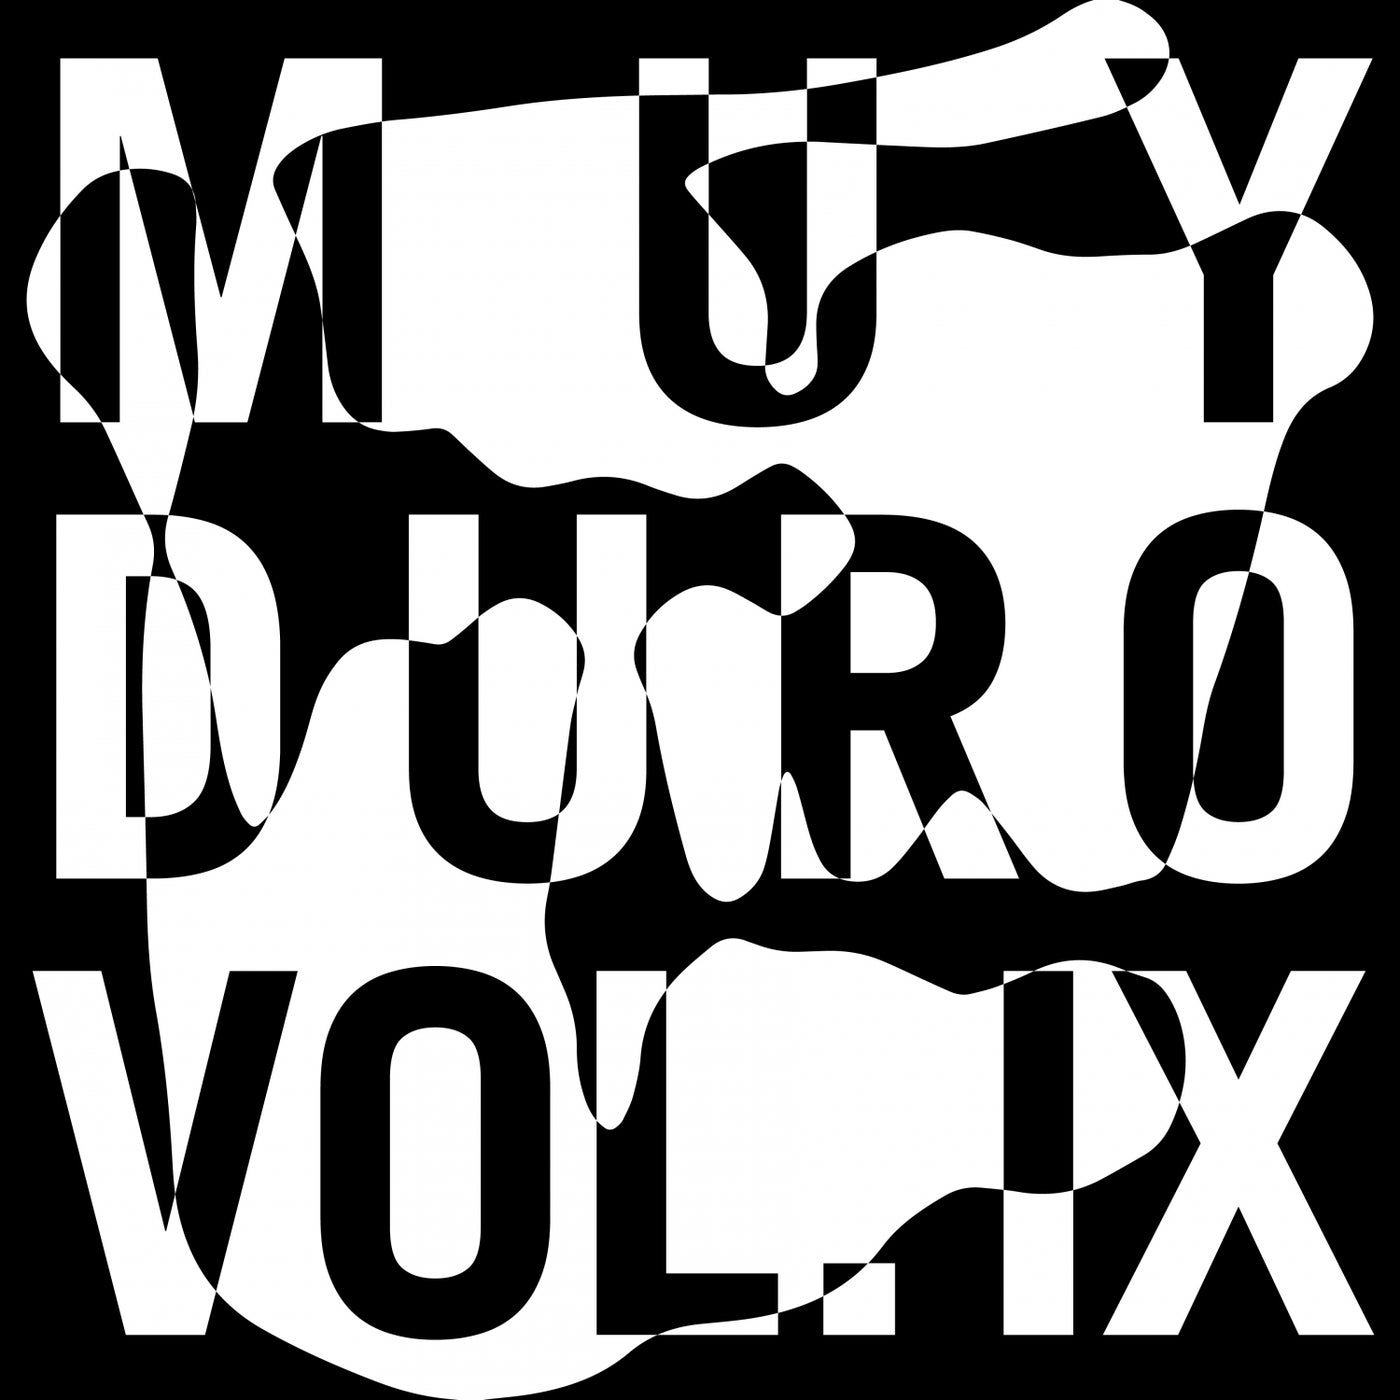 Muy Duro Vol. 9